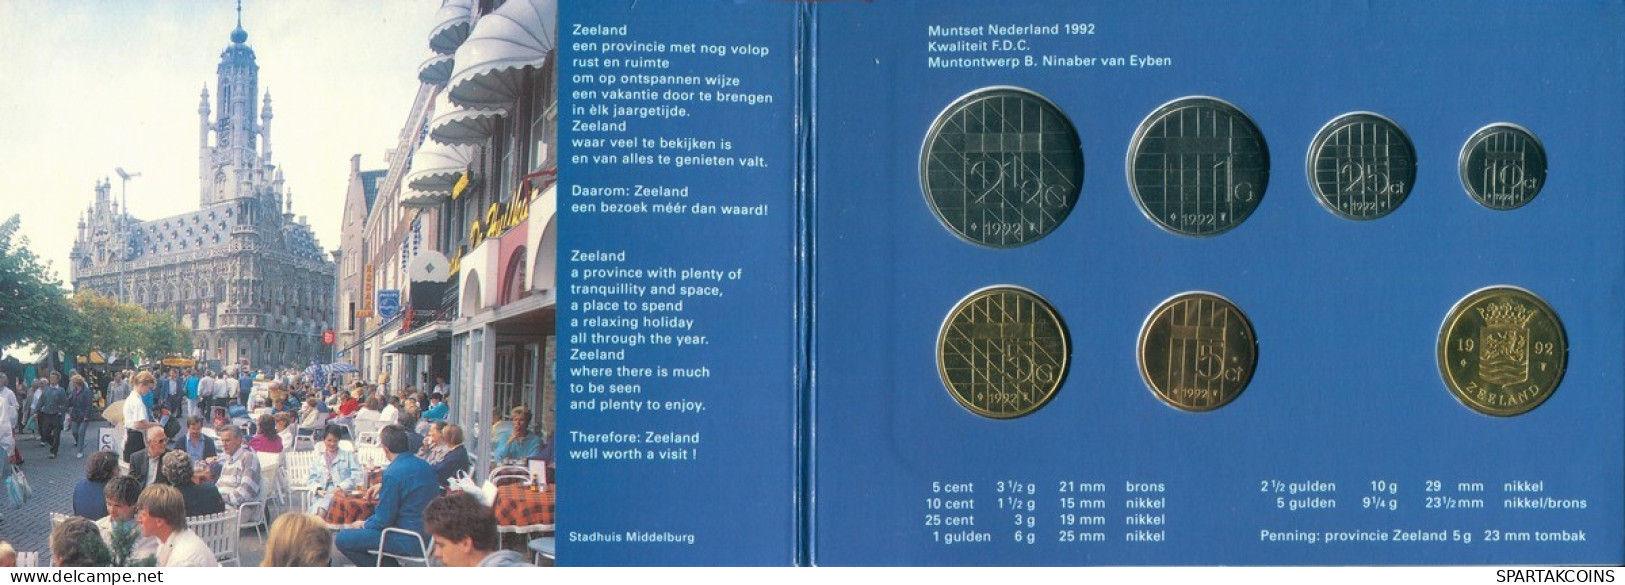 NETHERLANDS 1992 MINT SET 6 Coin + MEDAL #SET1112.7.U.A - Mint Sets & Proof Sets